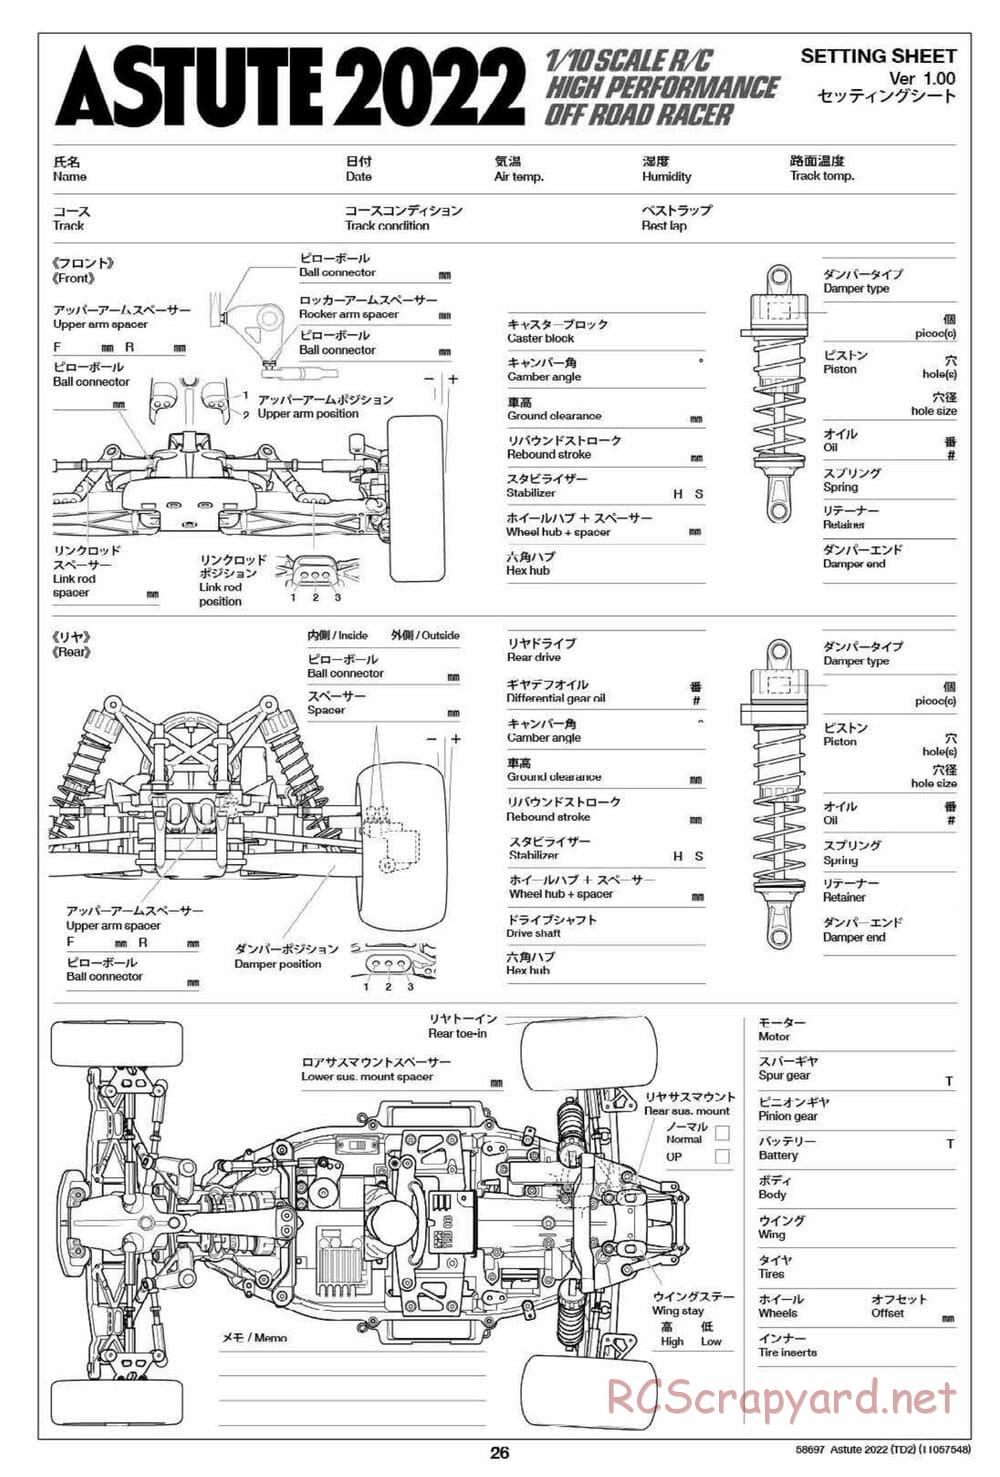 Tamiya - Astute 2022 - TD2 Chassis - Manual - Page 26